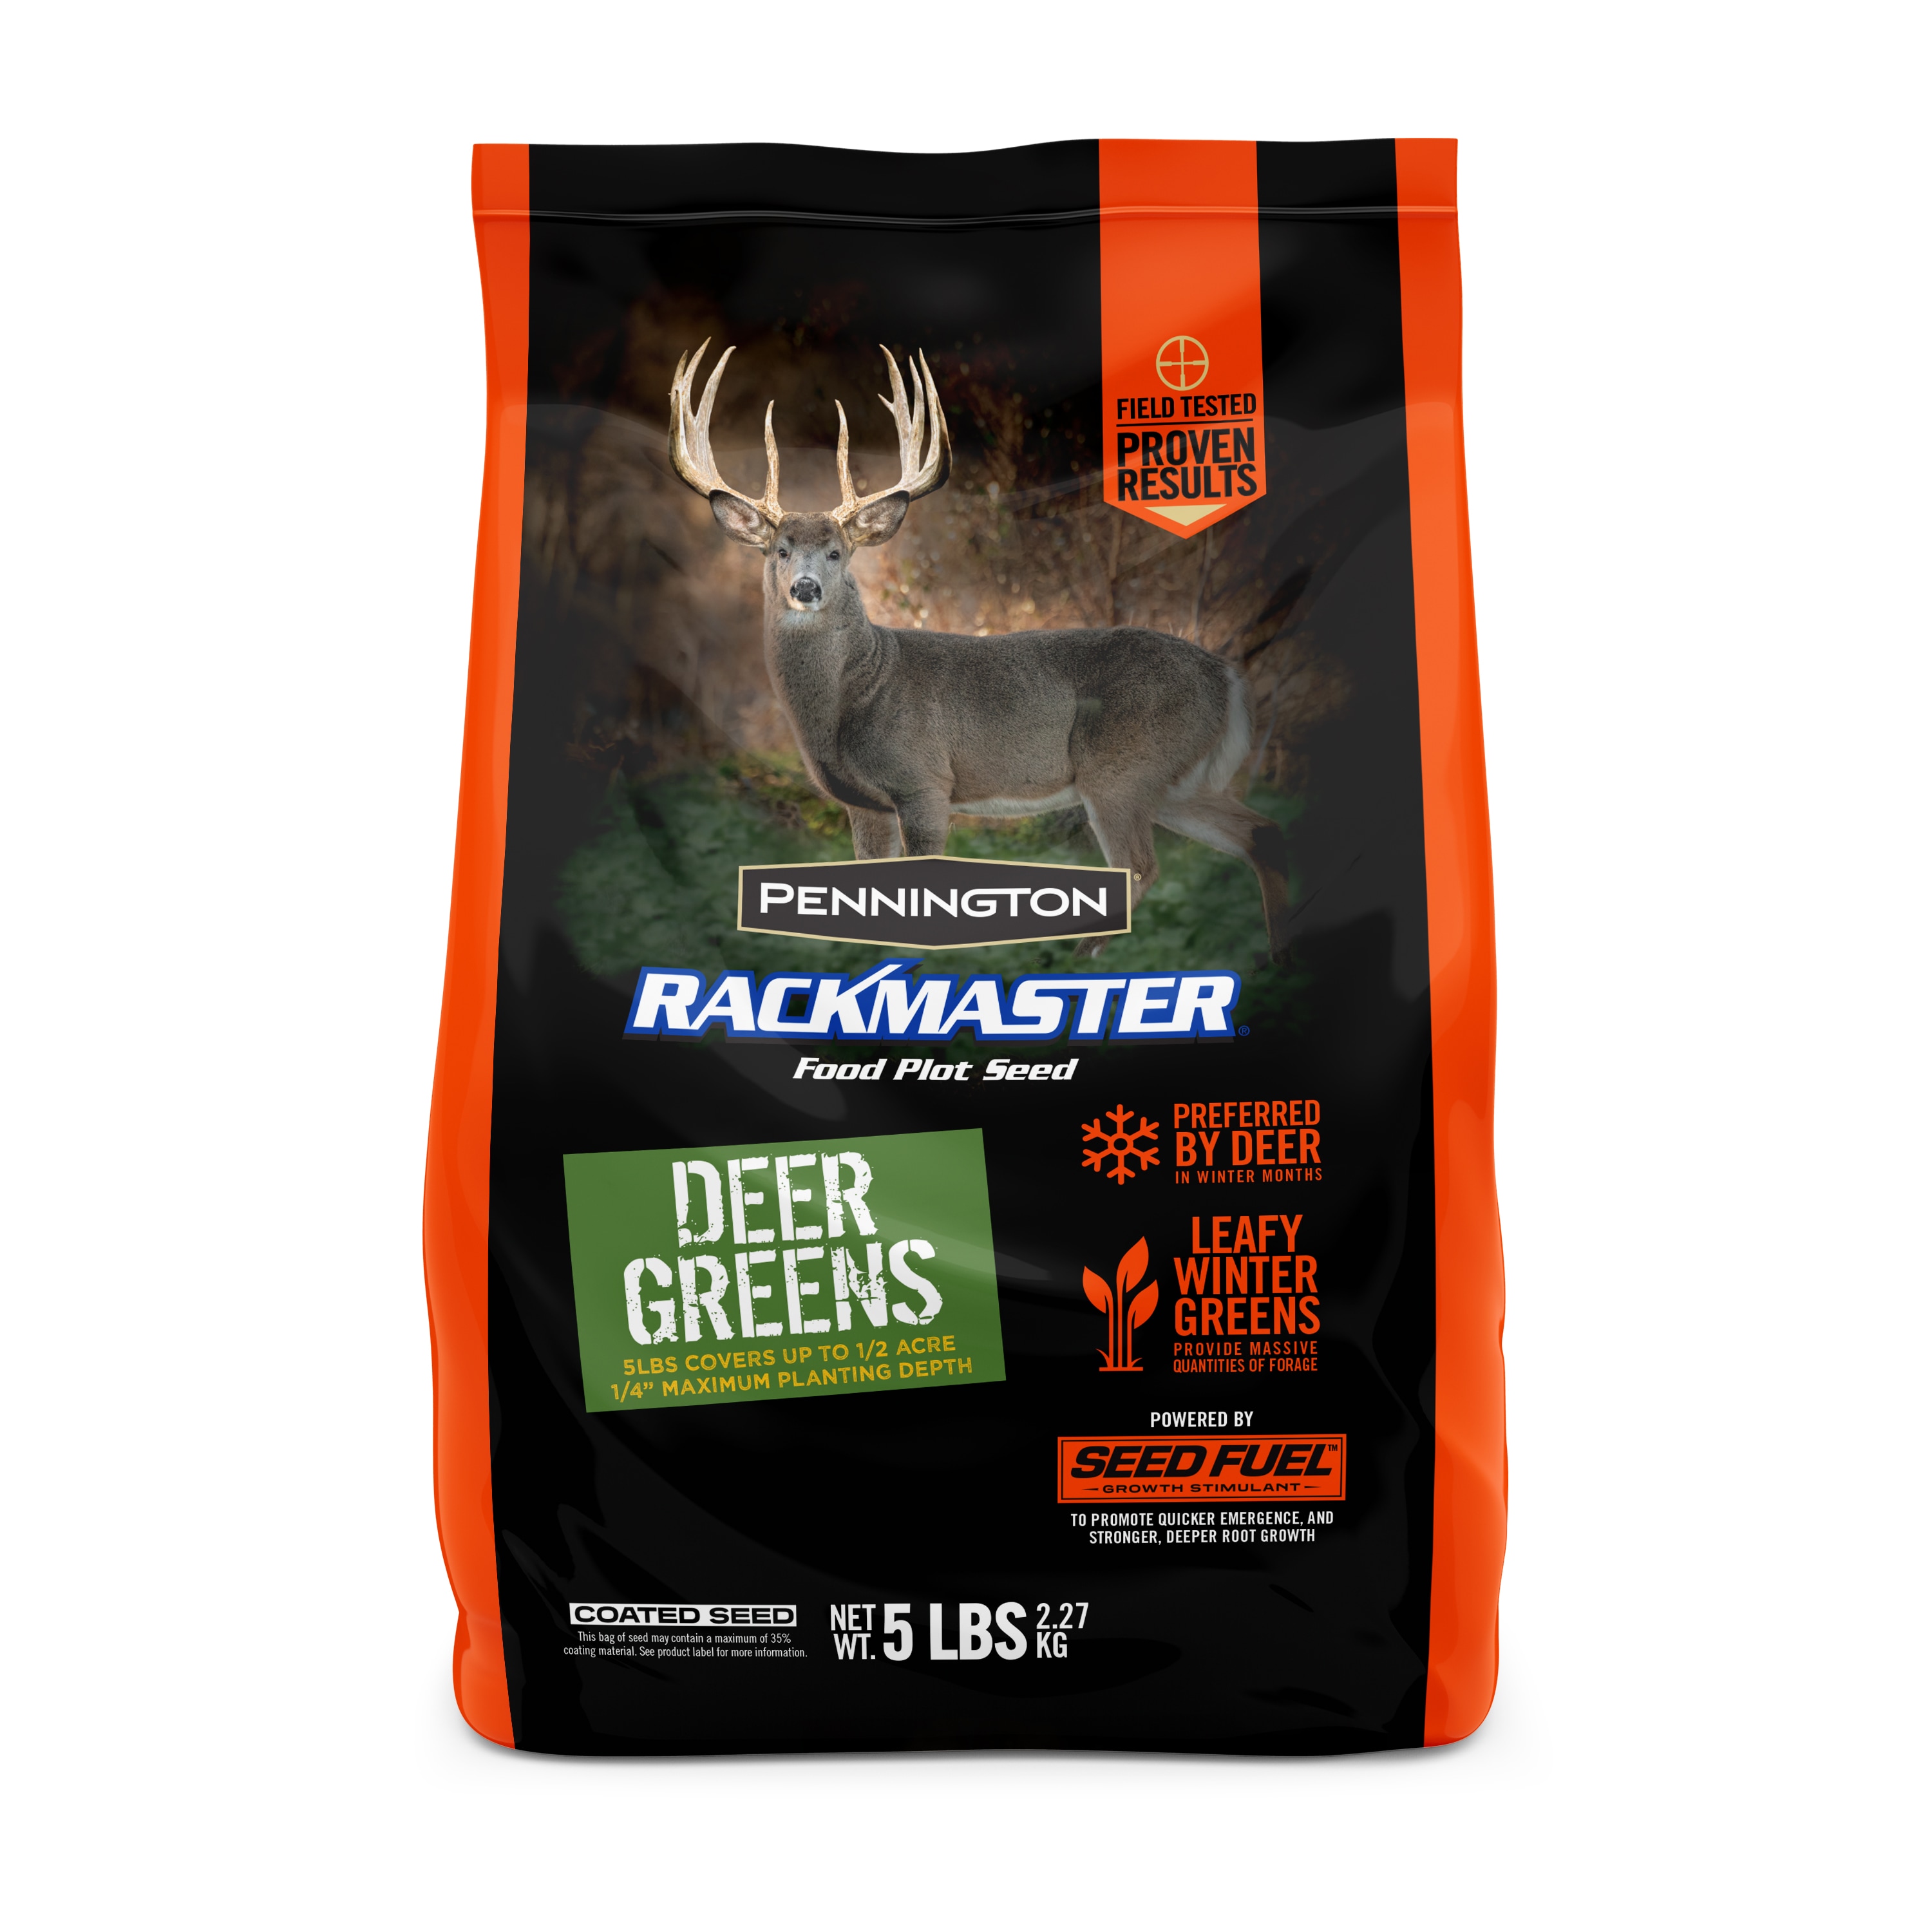 Pennington Rackmaster Deer Greens Food Plot Seed 5-lb Mixture/Blend Grass Seed | 2149628151